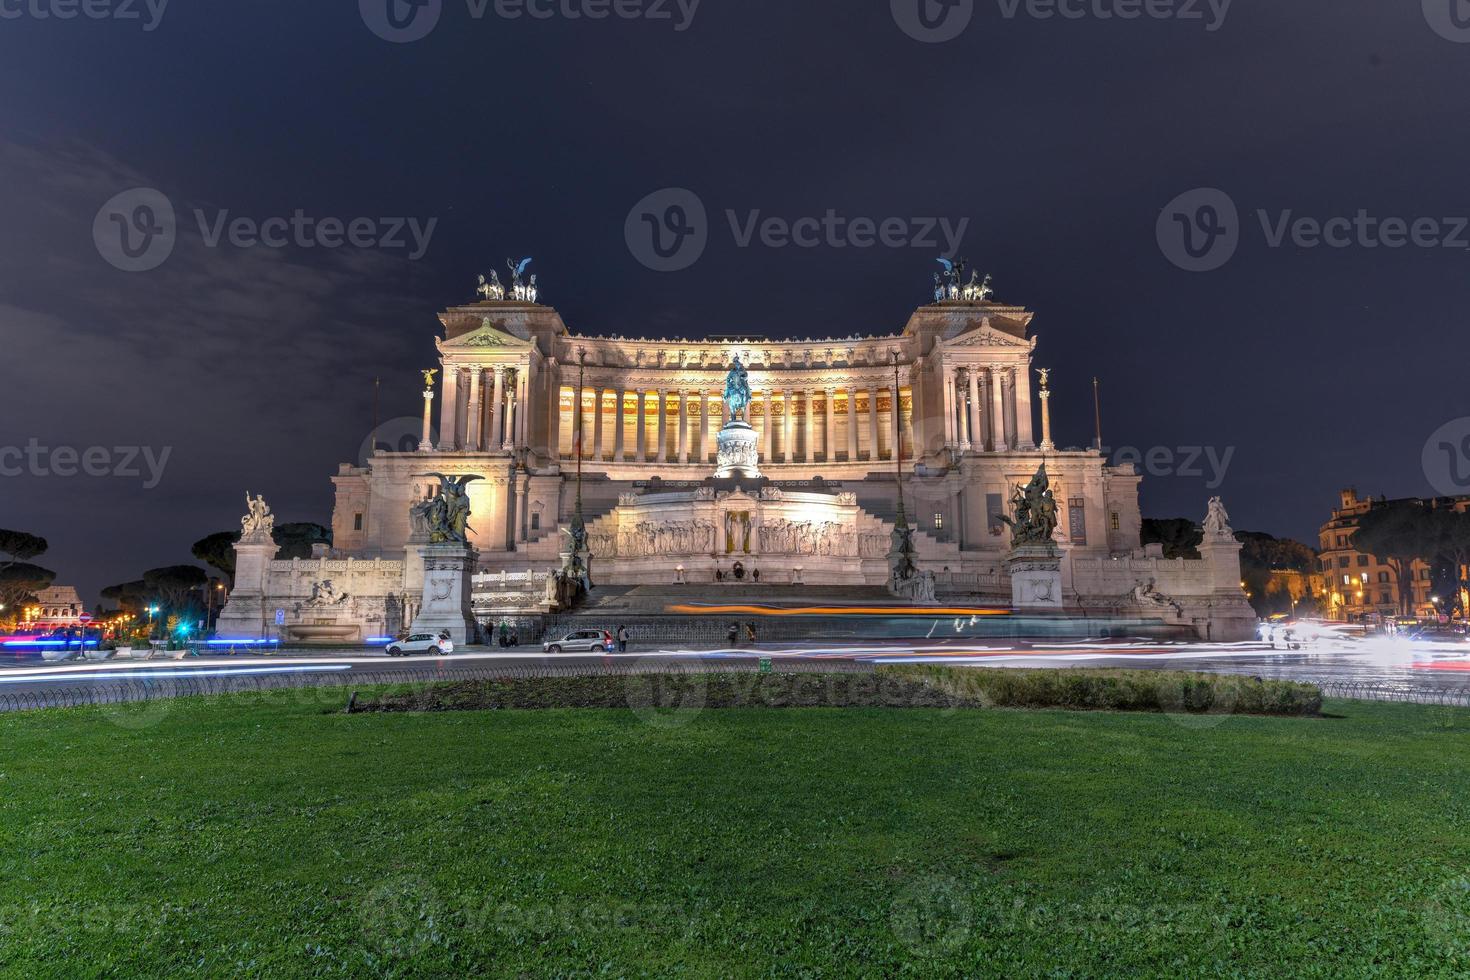 de monument till segrare emmanuel ii. altare av de fädernesland. piazza venezia i rom, Italien på natt. foto